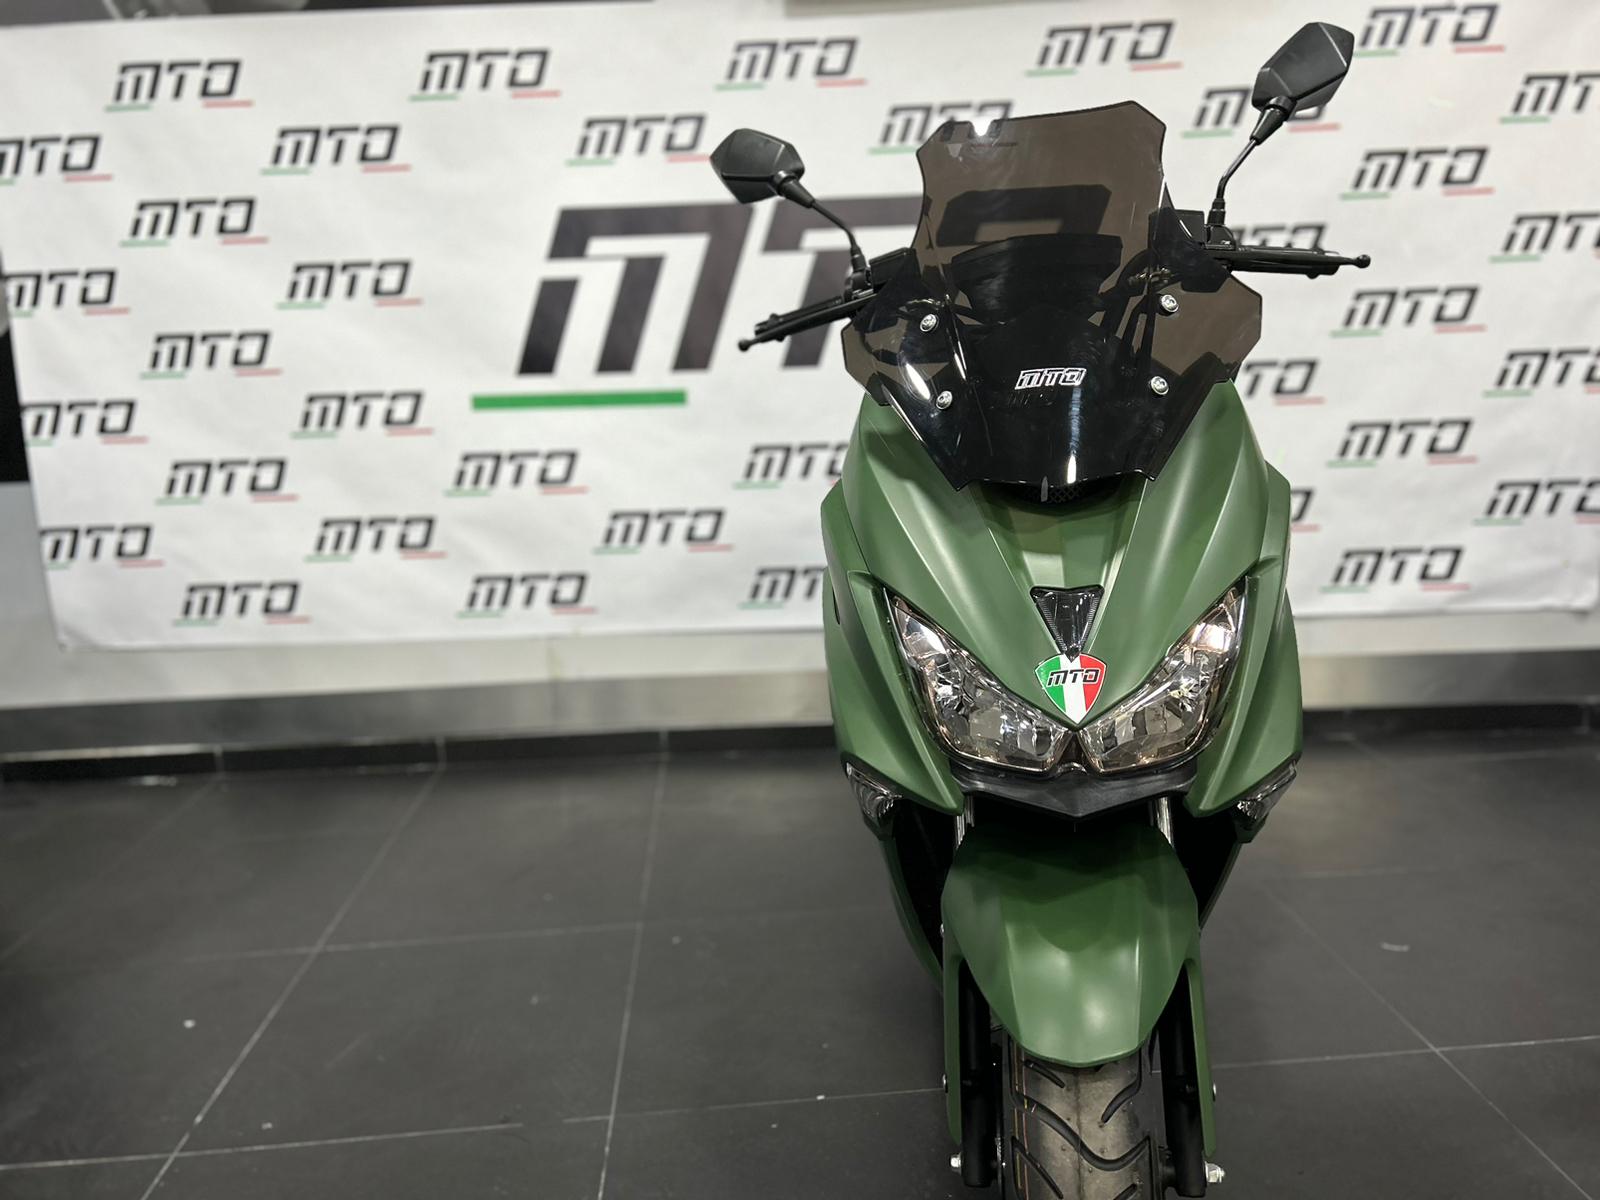 MTO URUS - MTO Motor